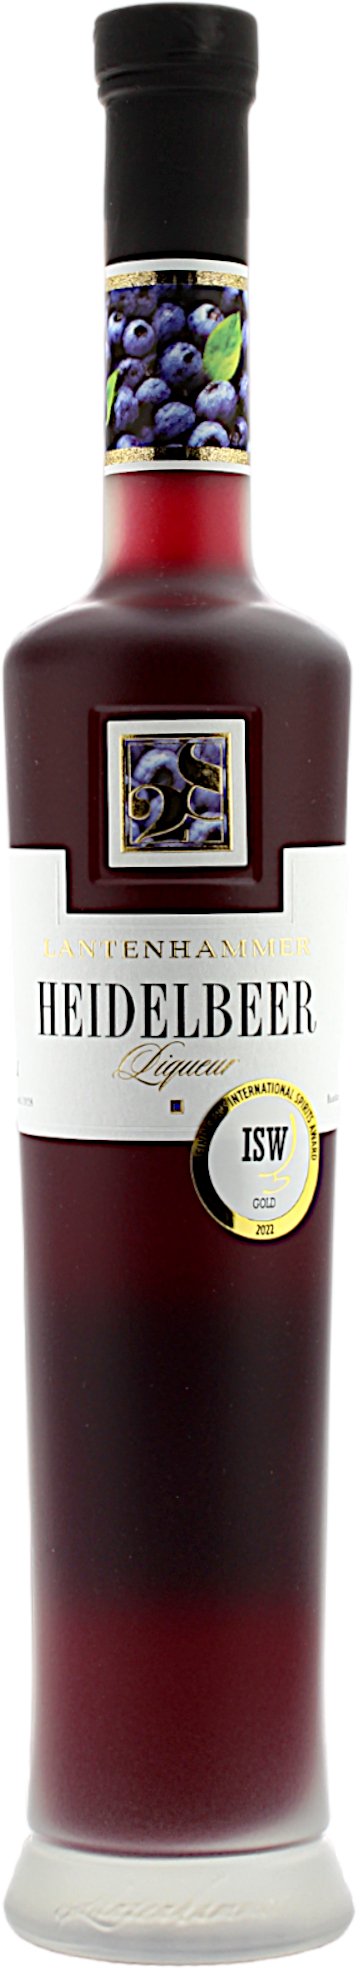 Lantenhammer Heidelbeer Liqueur 25.0% 0,5l